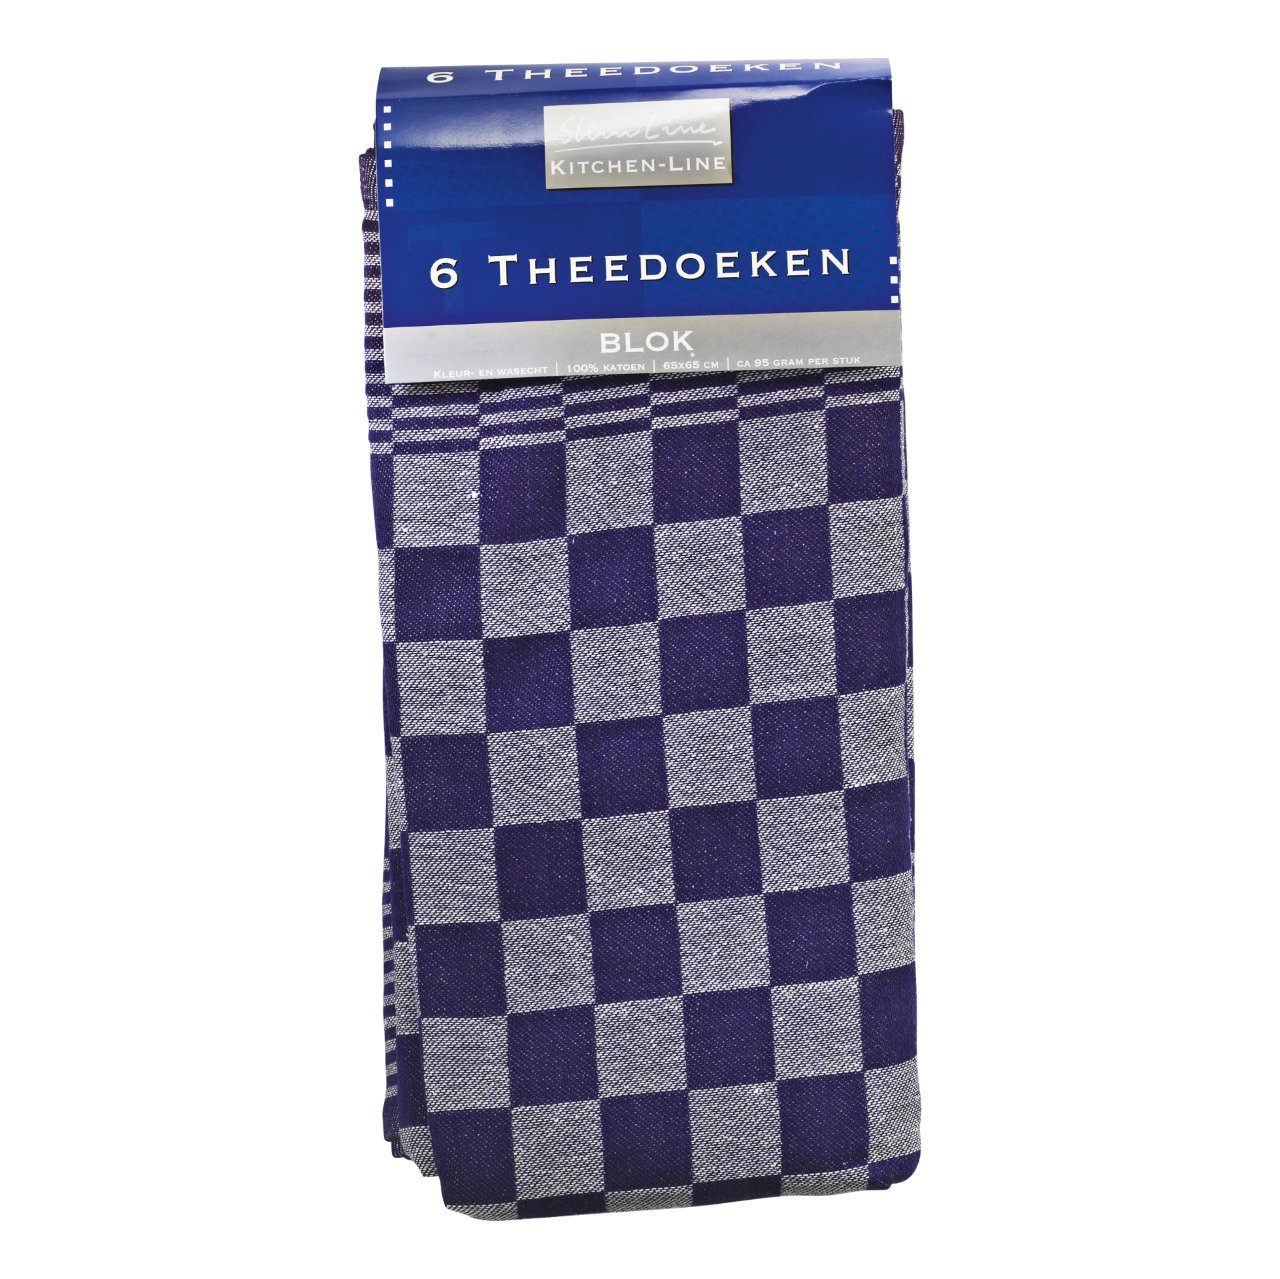 Theedoeken design Blok blauw 65 x 65 cm